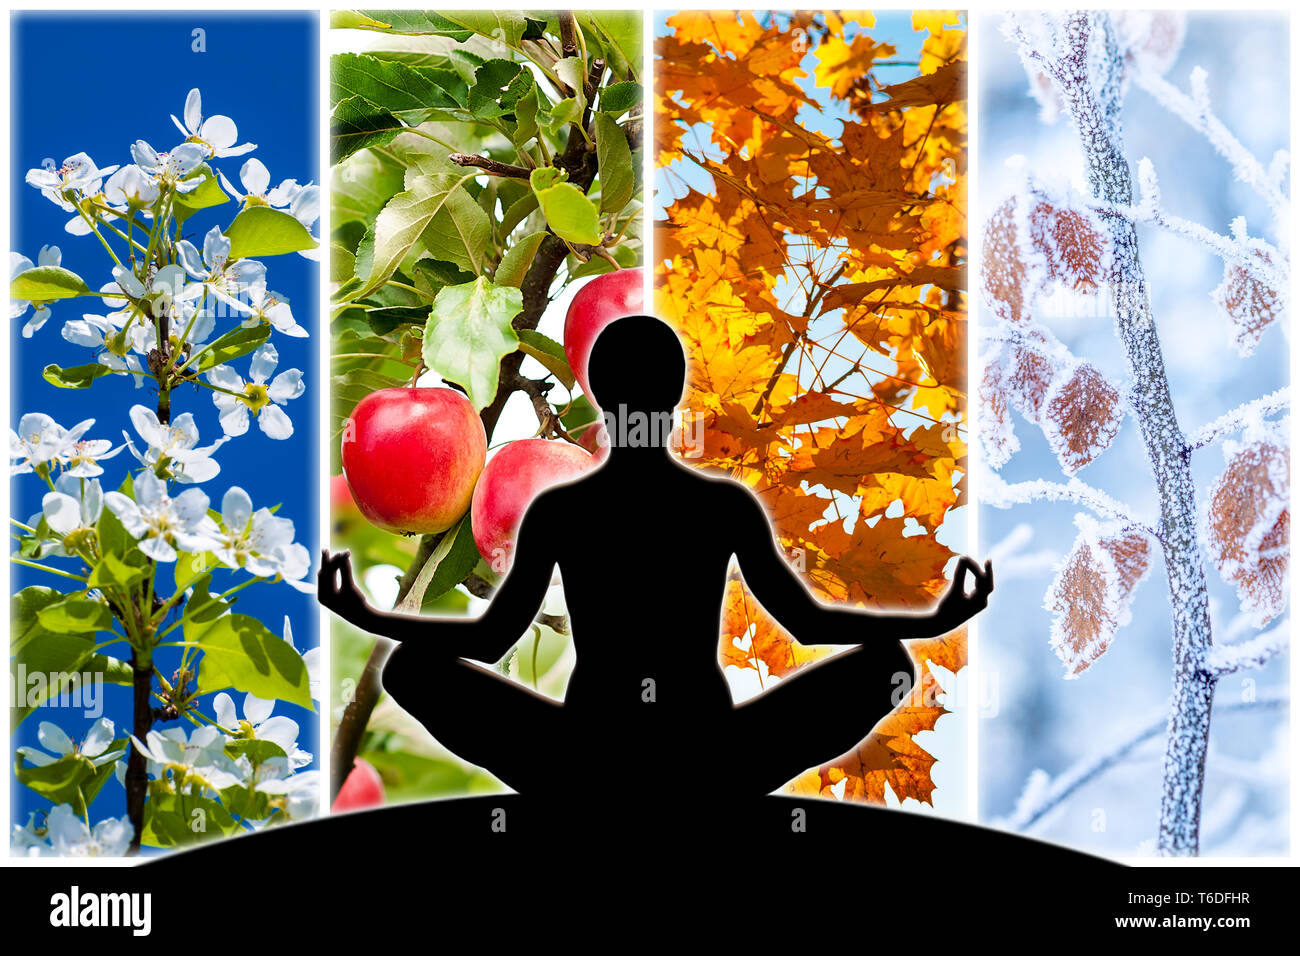 Yoga féminin figure silhouette contre collage de quatre images représentant chaque Saison : Printemps, été, automne et hiver. Banque D'Images